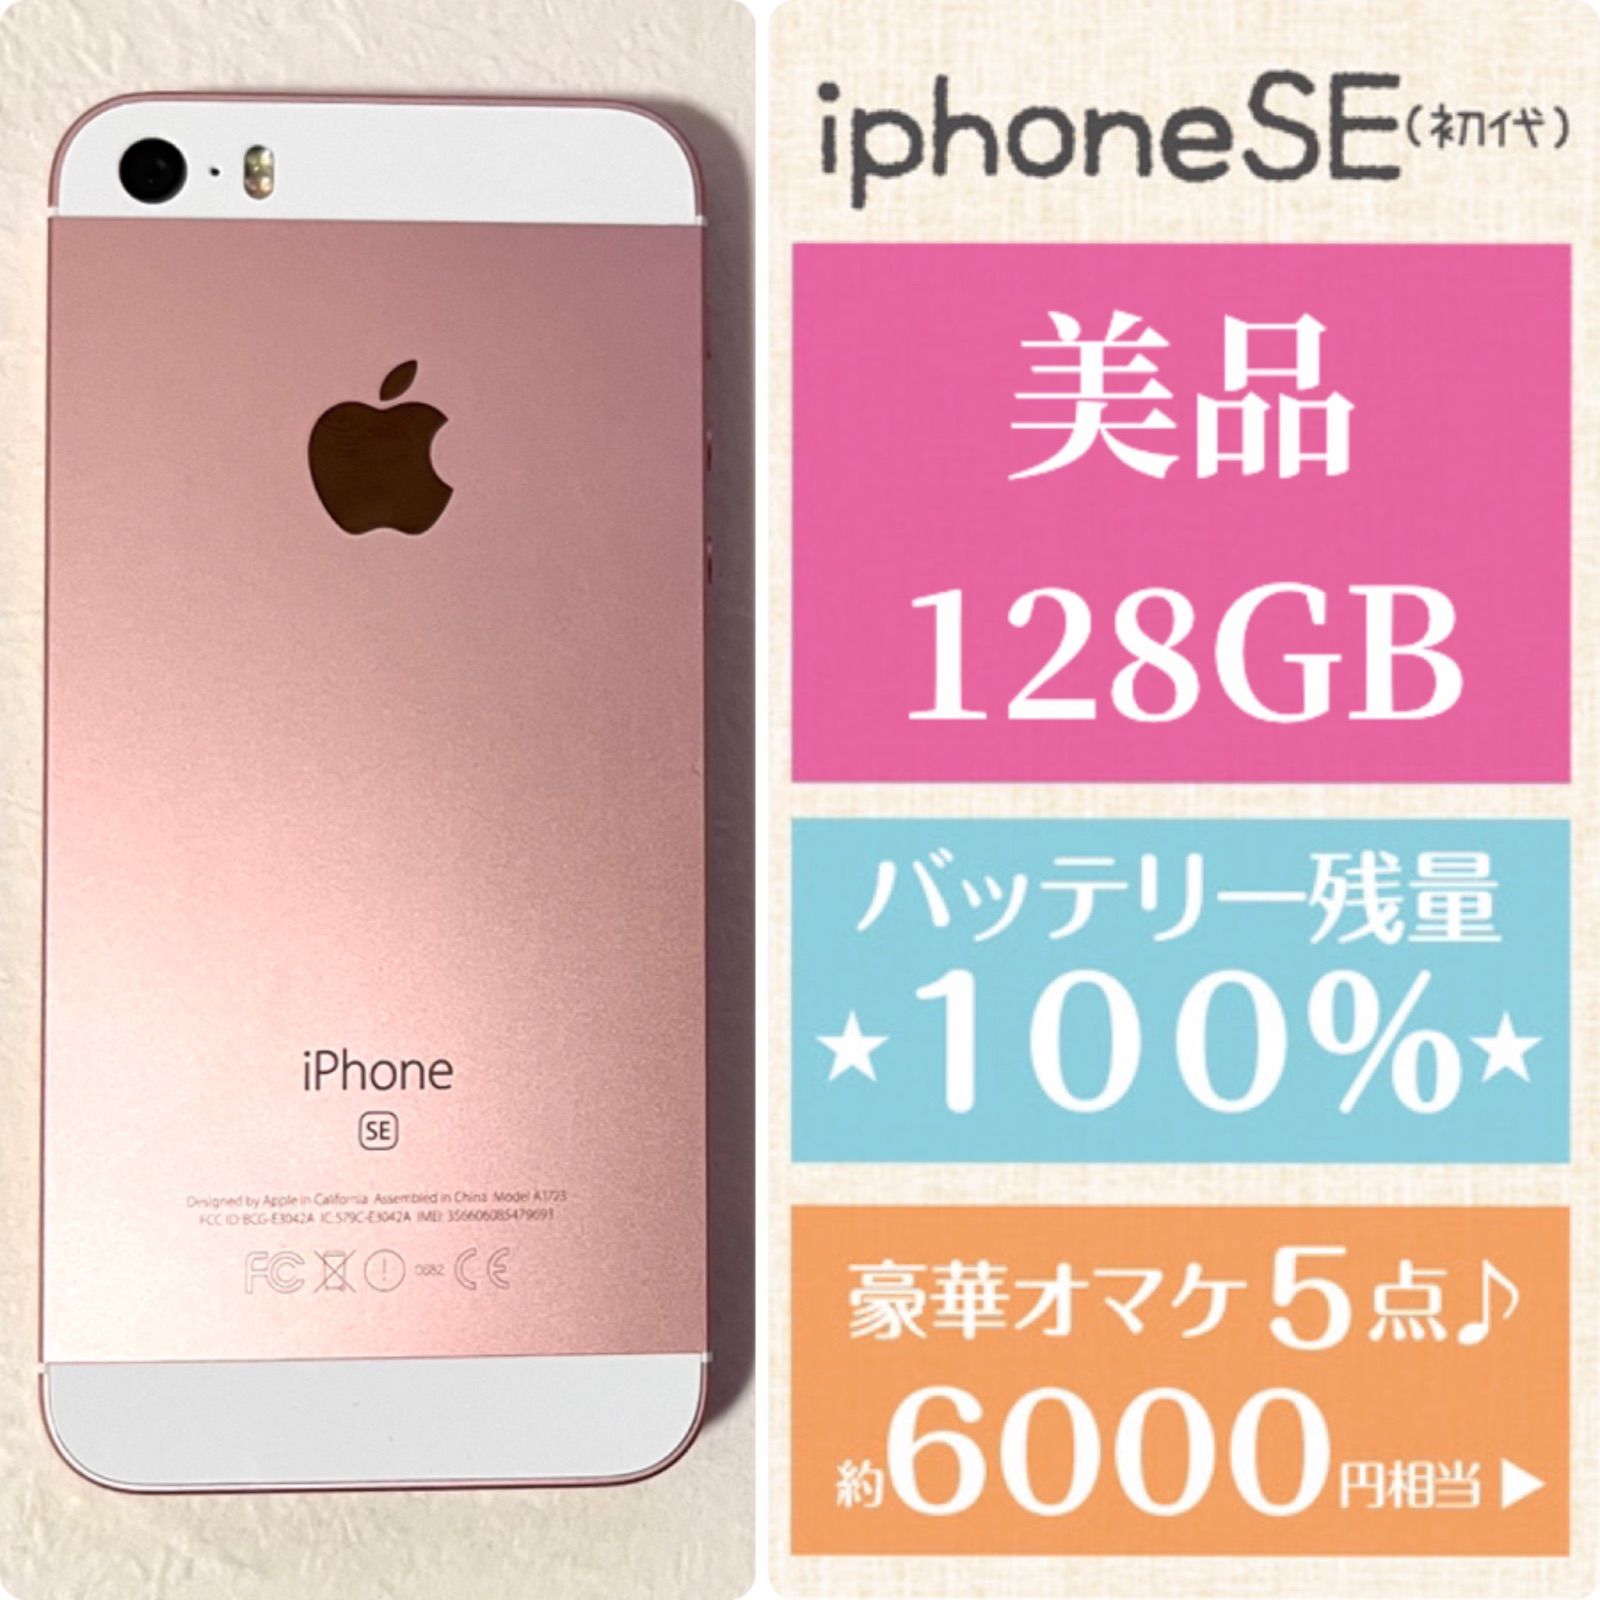 美品☆iPhoneSE☆大容量128GB☆バッテリー新品100%☆ローズゴールド